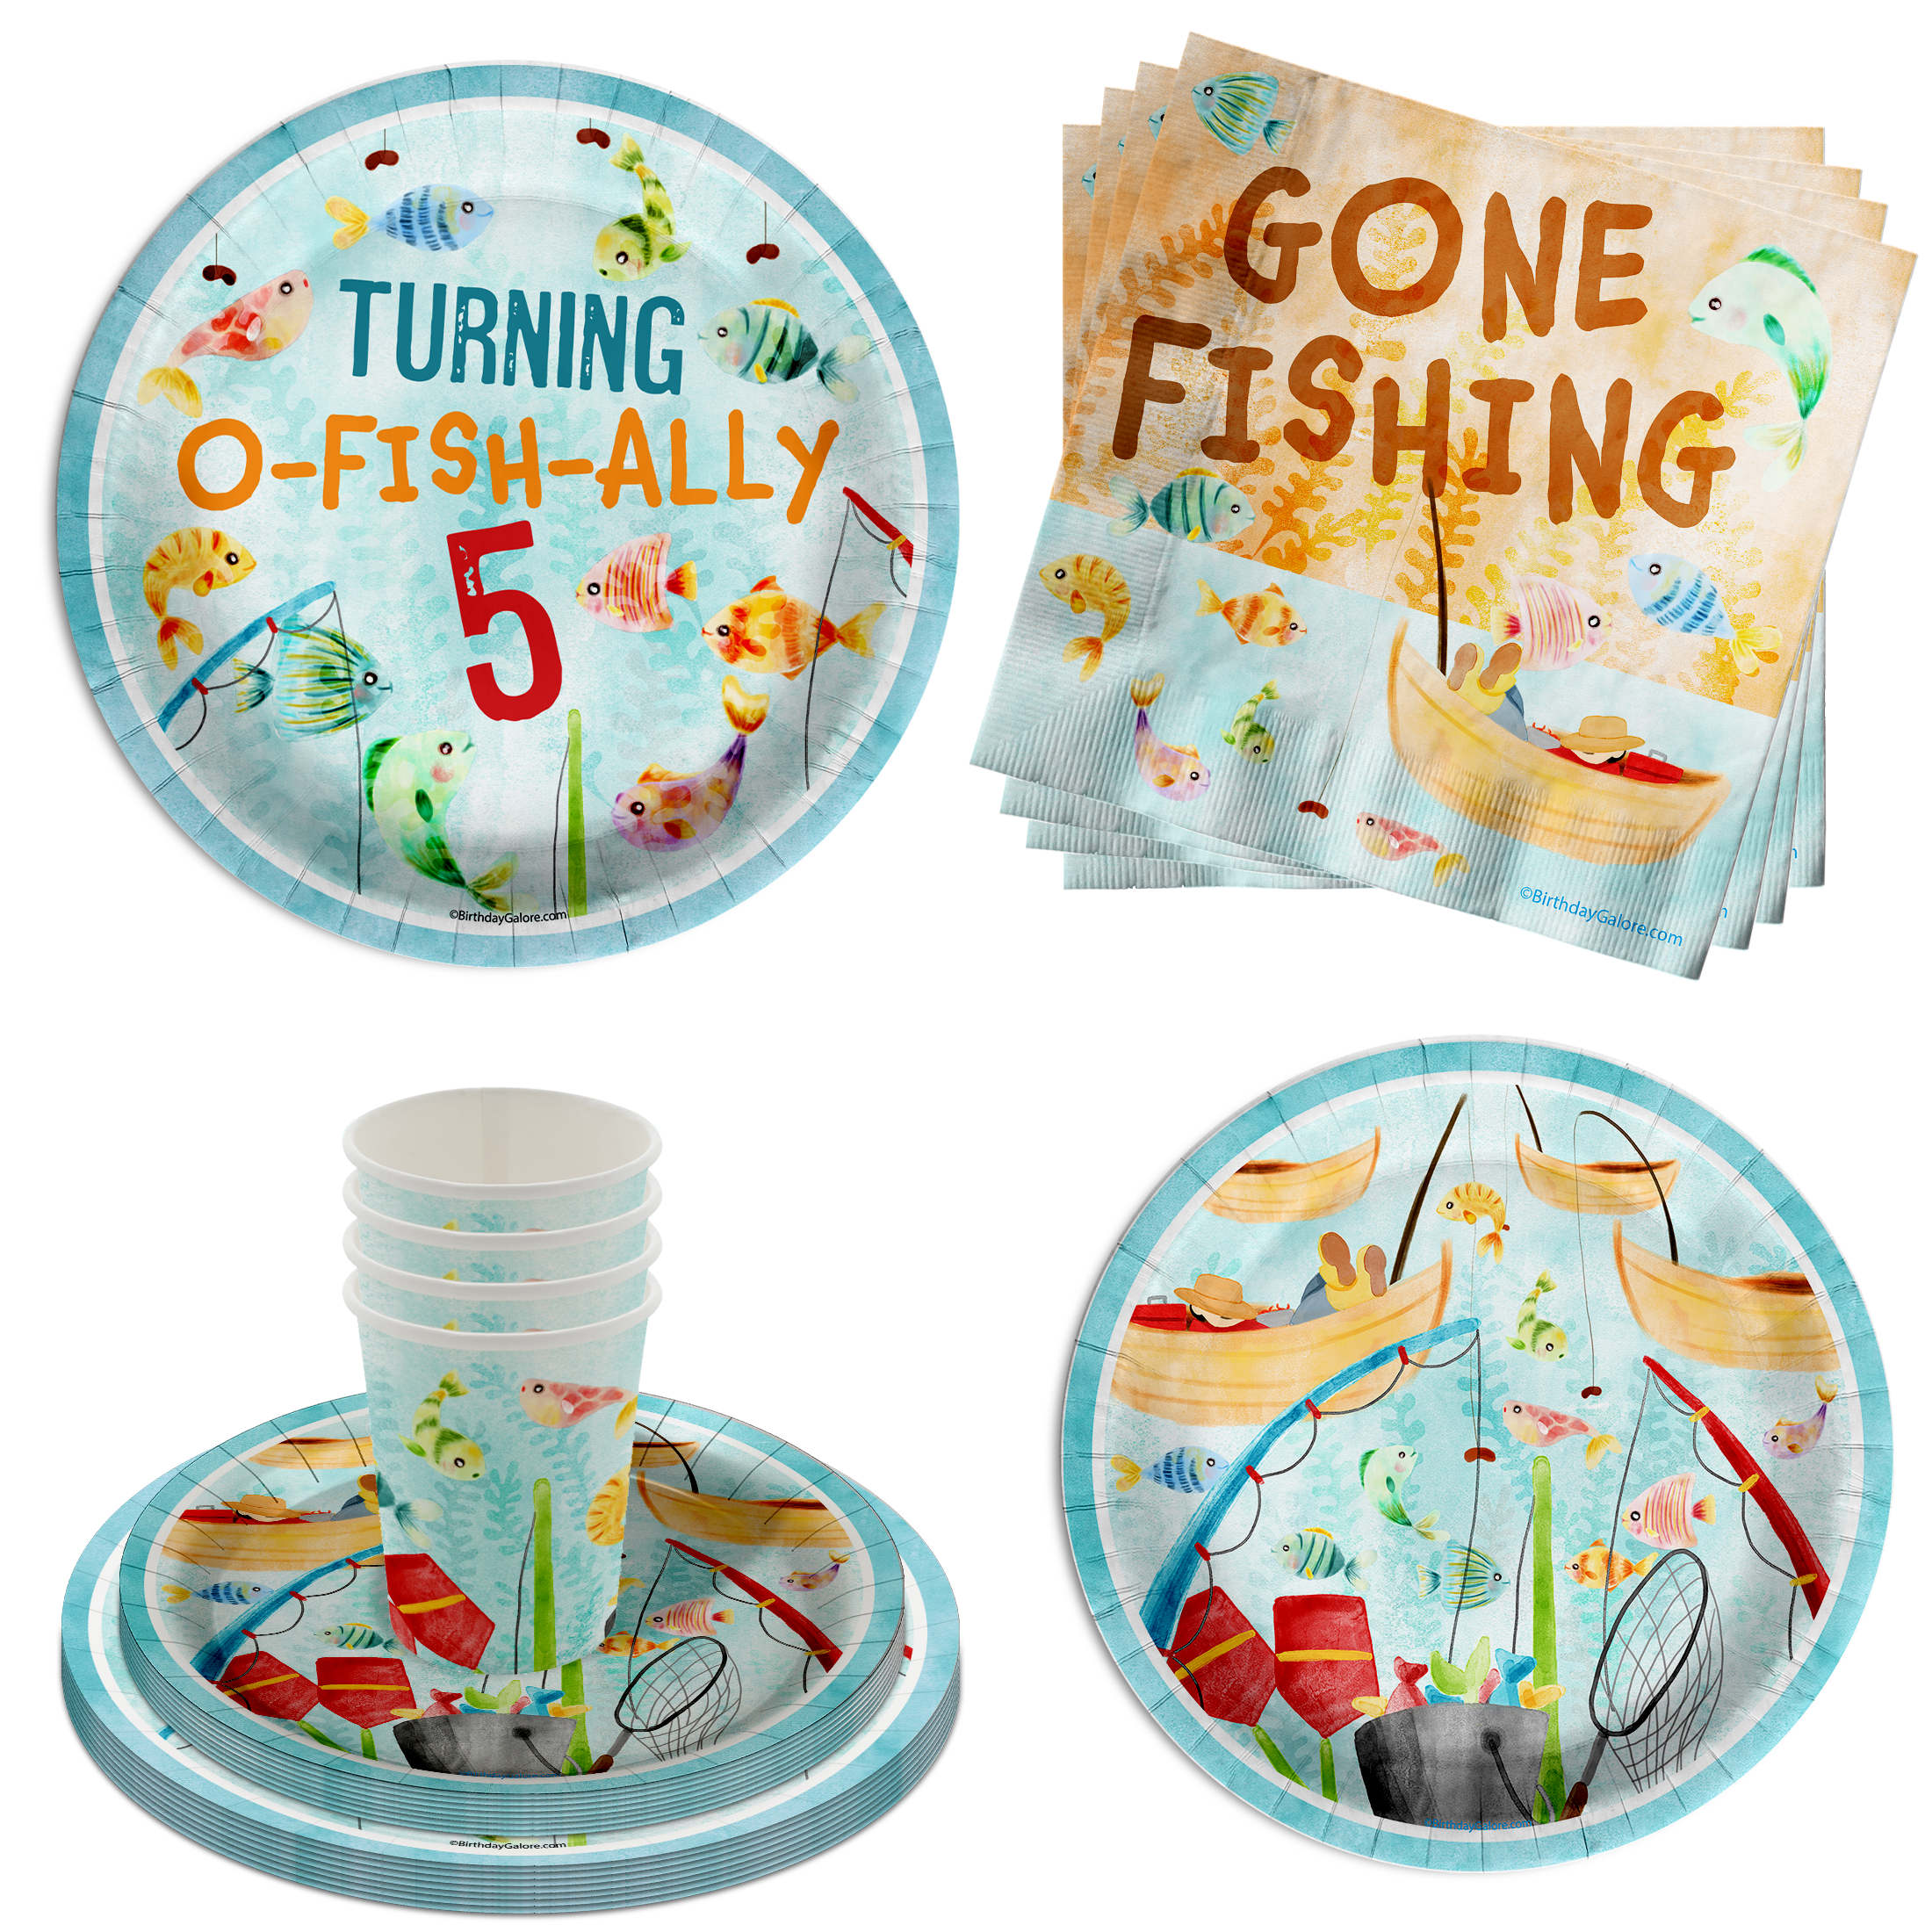 GONE FISHING PARTY Cups - Fishing Party Fishing Party Favors